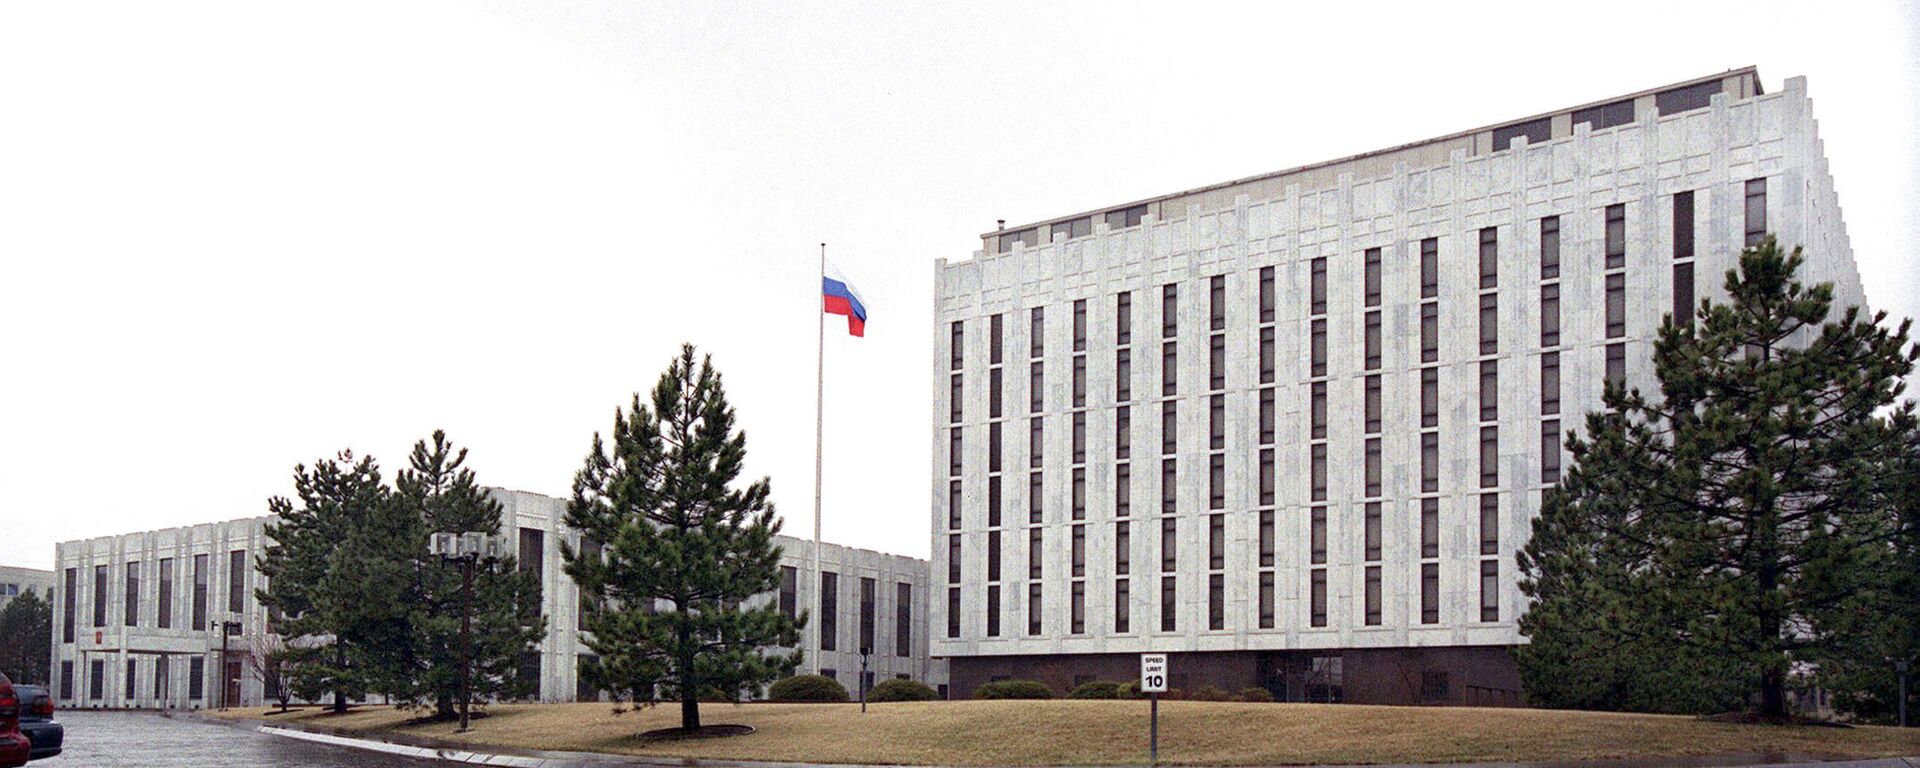 Здание Российского посольства в Вашингтоне - Sputnik Việt Nam, 1920, 20.03.2021